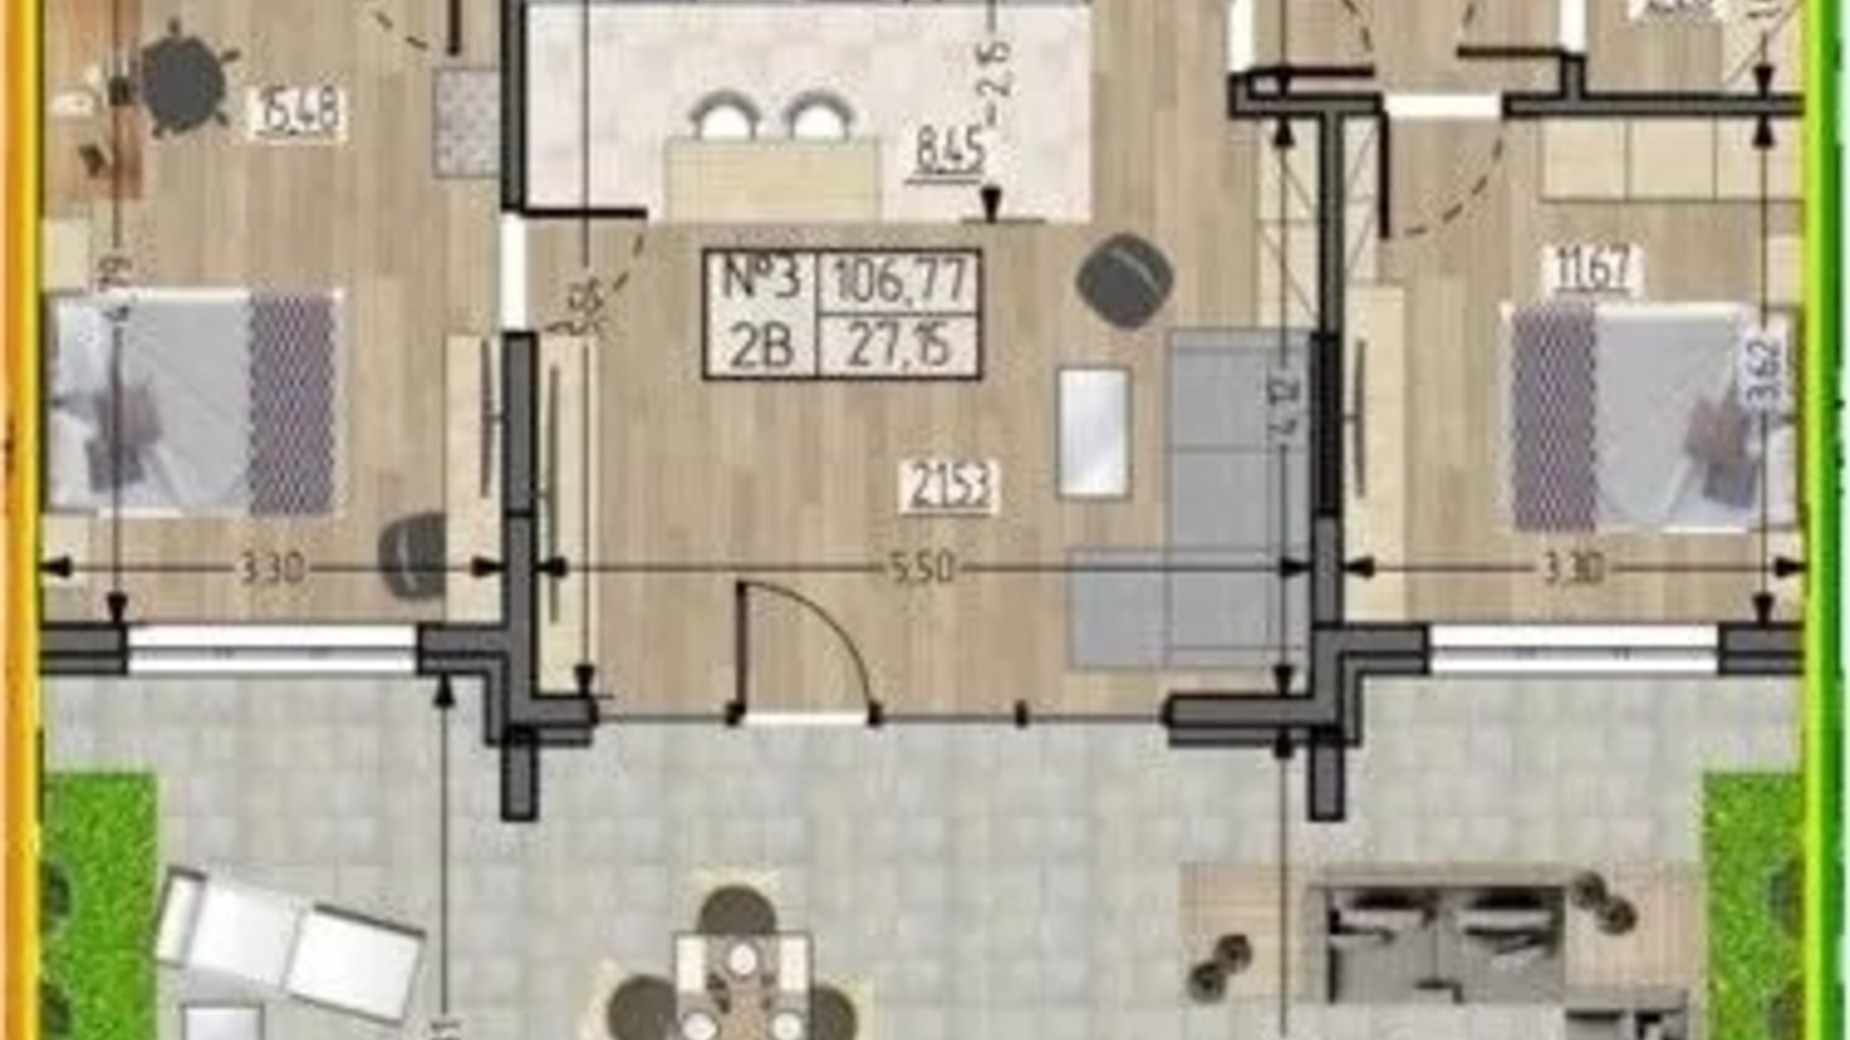 Планировка 3-комнатной квартиры в ЖСК Полетаева 106.78 м², фото 622461